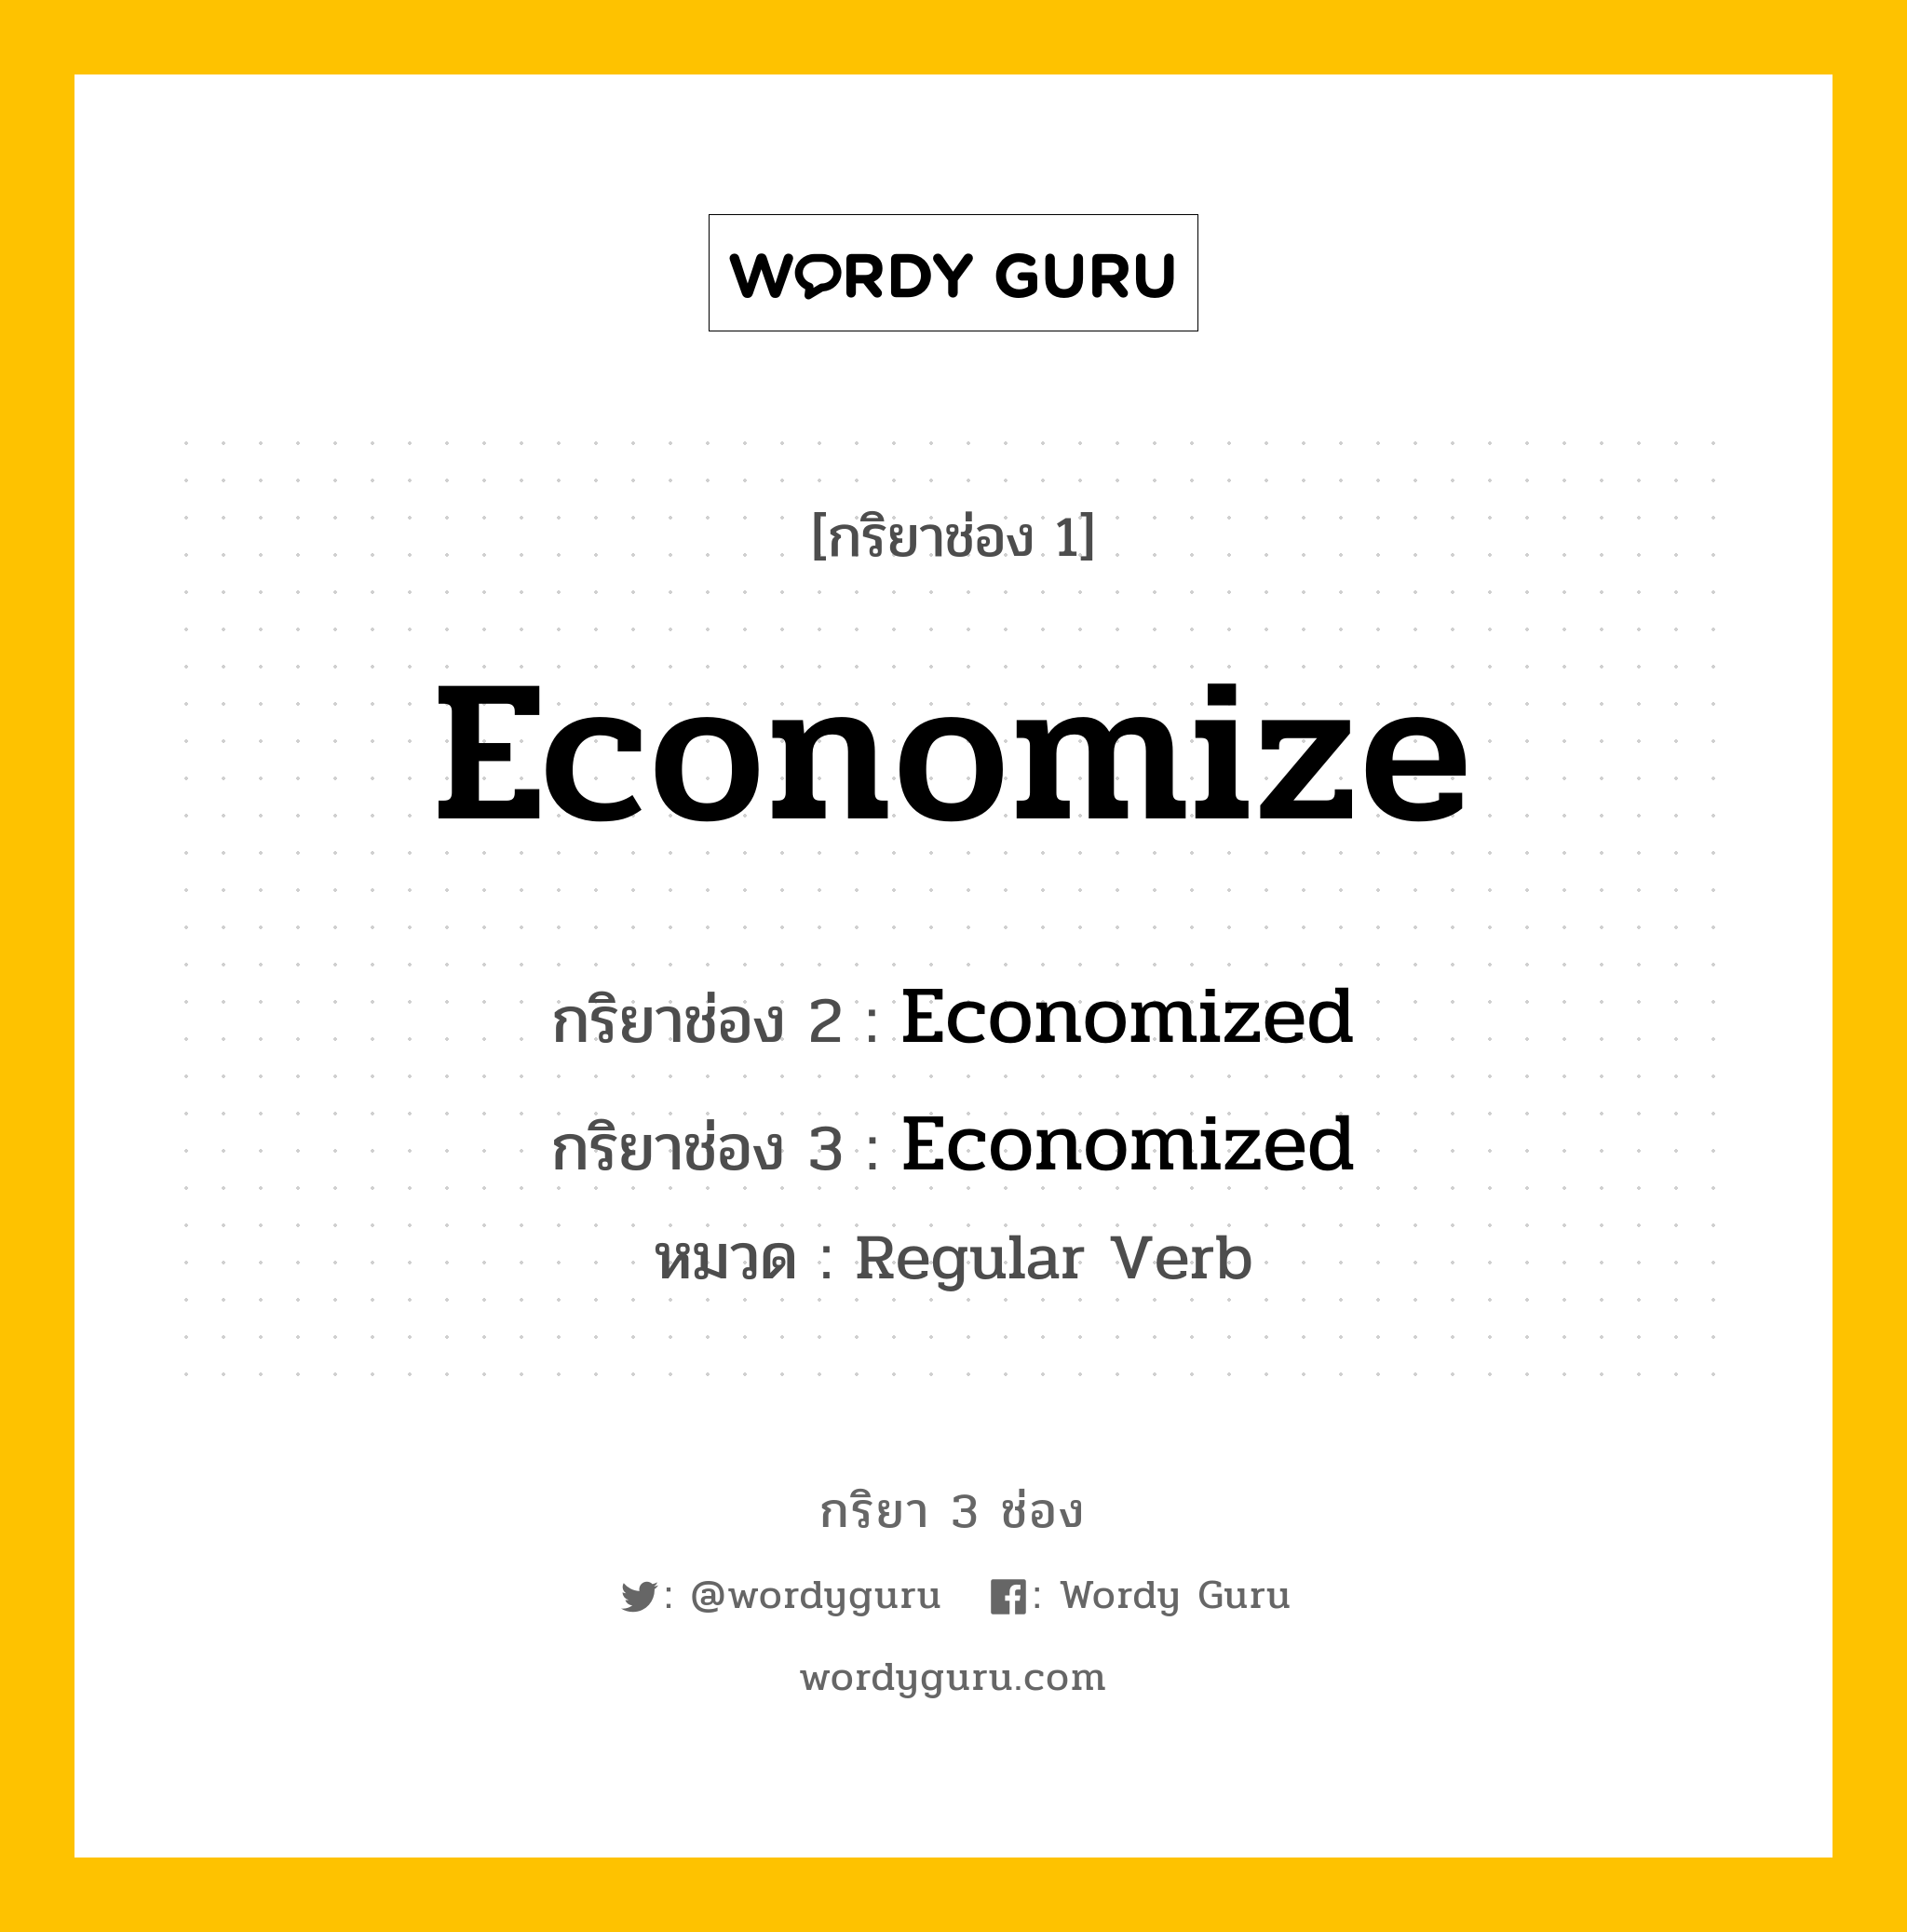 กริยา 3 ช่อง: Economize ช่อง 2 Economize ช่อง 3 คืออะไร, กริยาช่อง 1 Economize กริยาช่อง 2 Economized กริยาช่อง 3 Economized หมวด Regular Verb หมวด Regular Verb